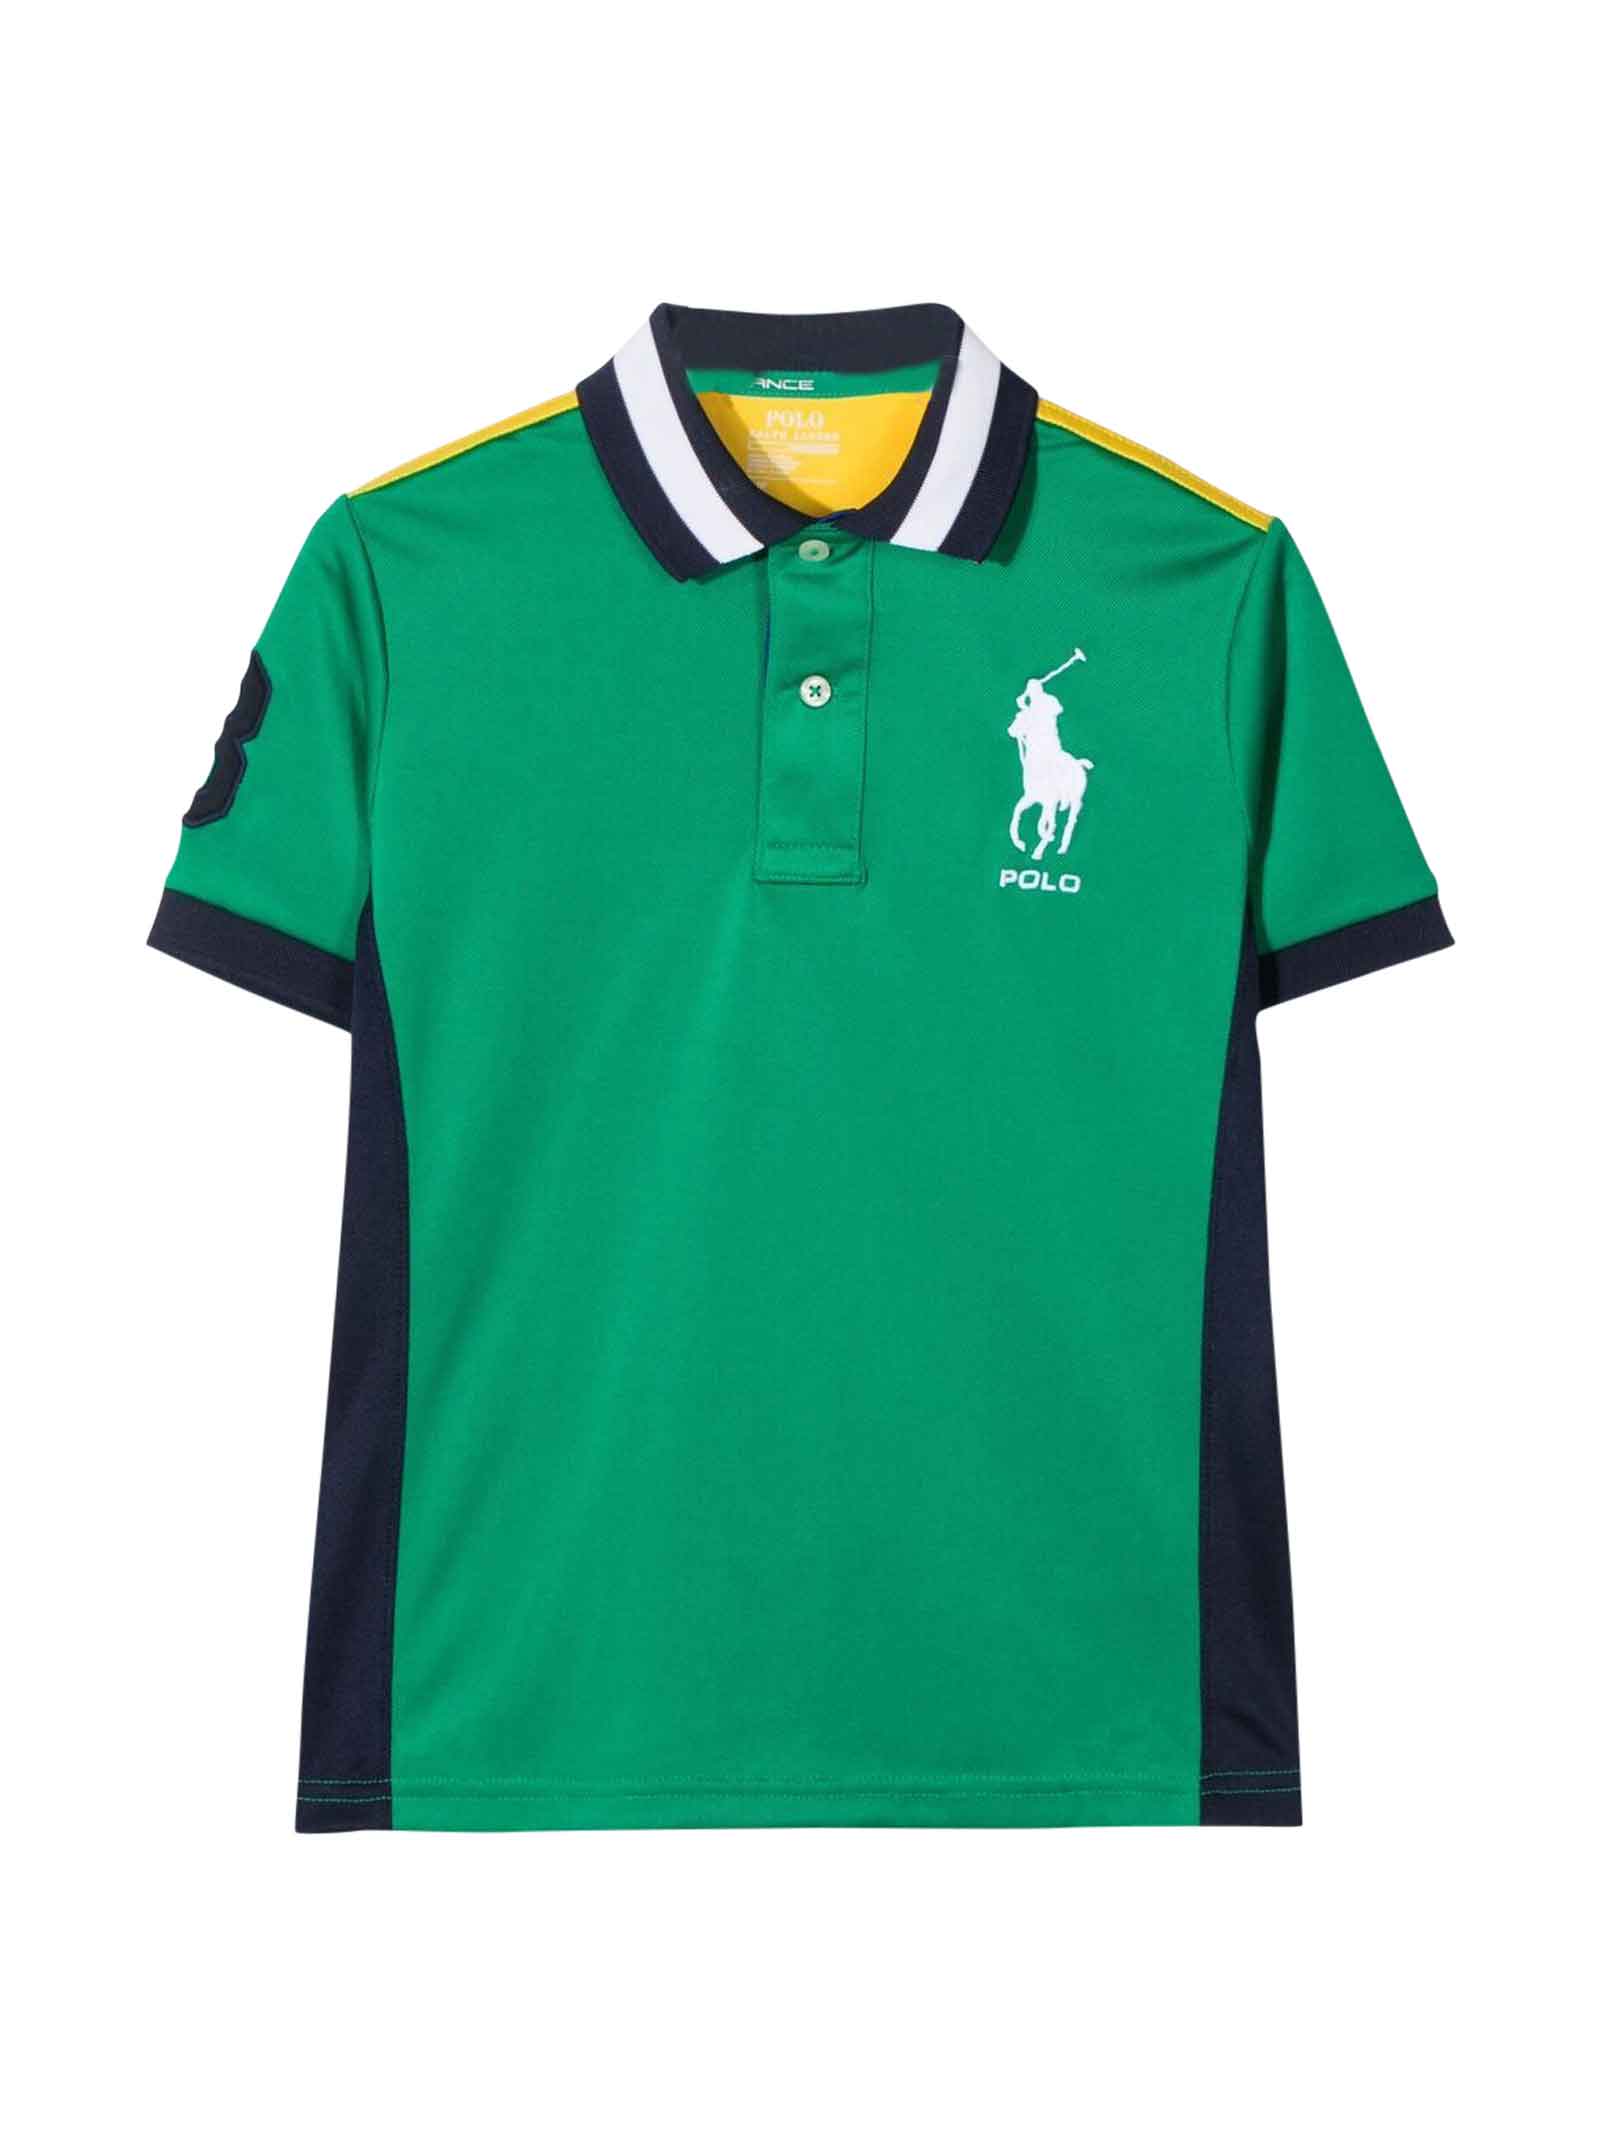 Ralph Lauren Green Polo Shirt